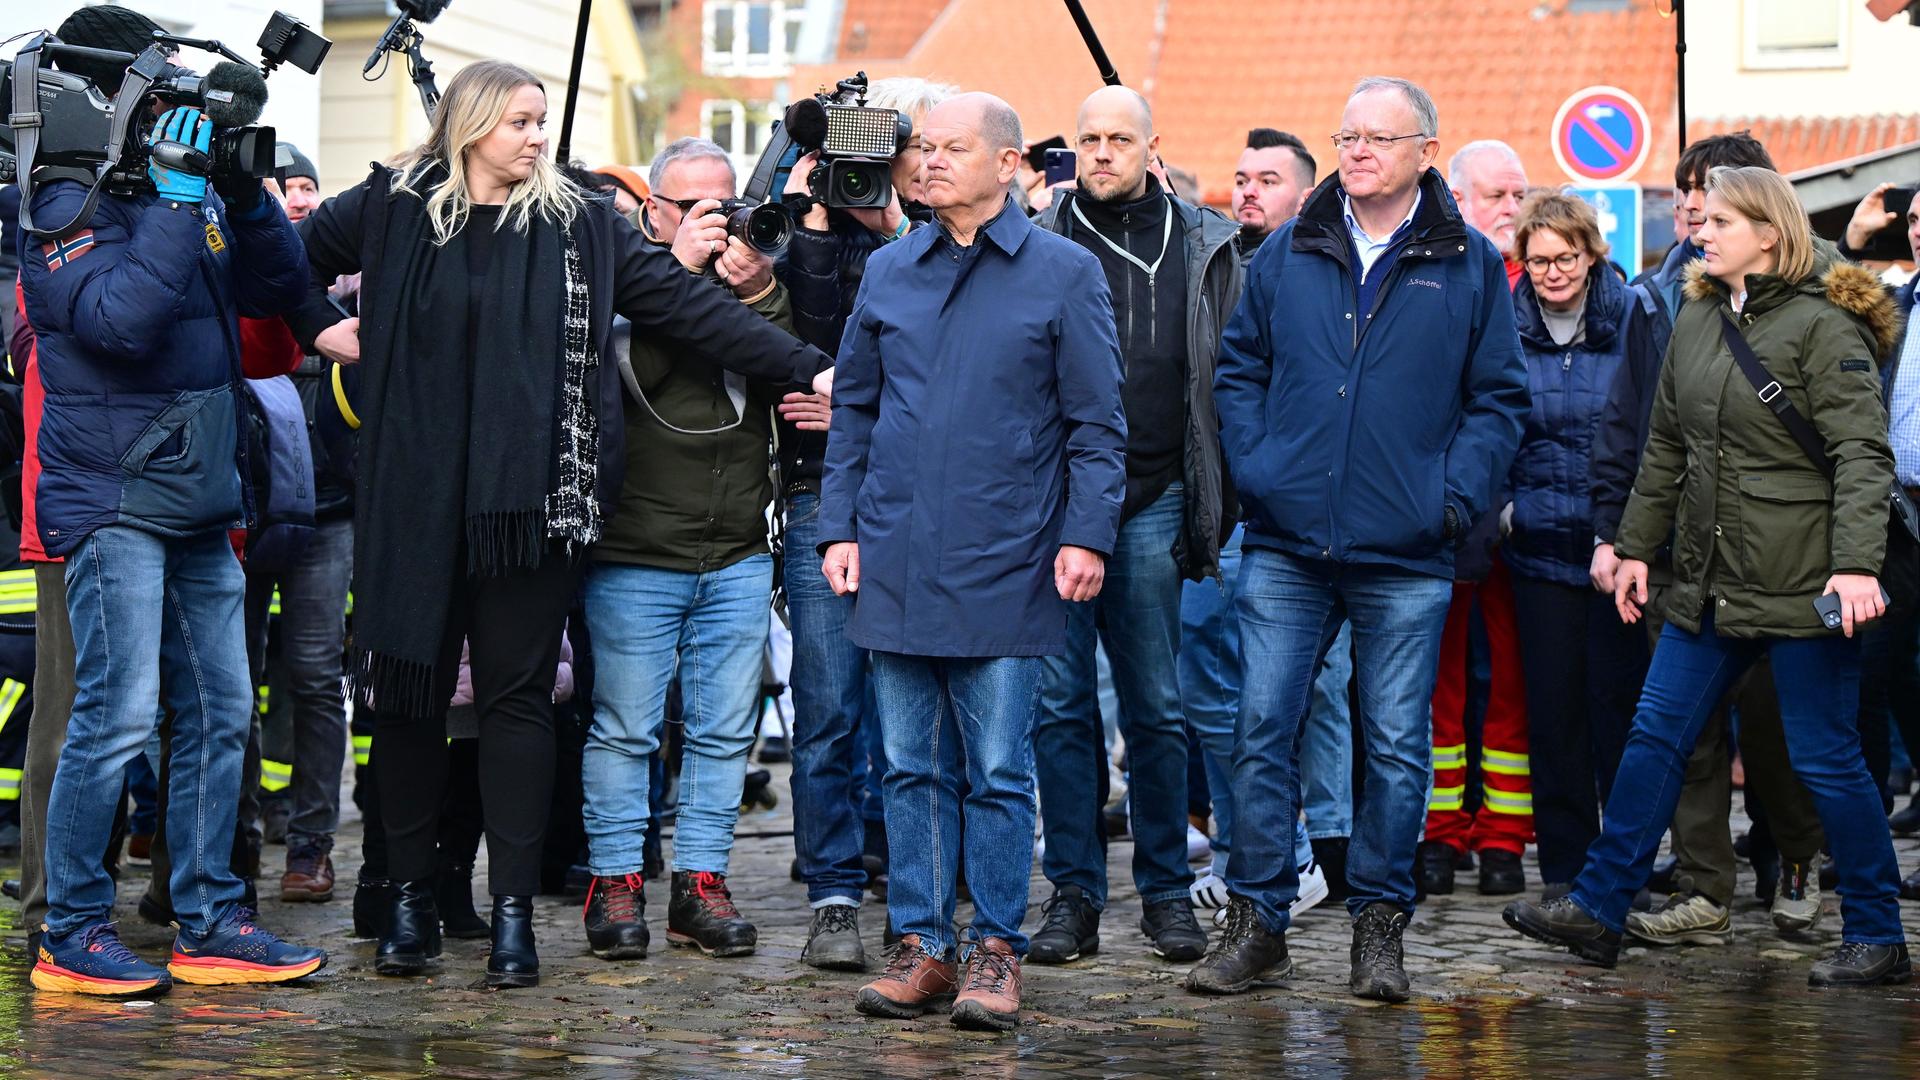 Bundeskanzler Olaf Scholz (SPD, M) und Stephan Weil (SPD, Mitte r), Ministerpräsident von Niedersachsen, stehen bei ihrem Besuch im Hochwassergebiet am Zusammenfluss von Weser und Aller an einer überfluteten Straße